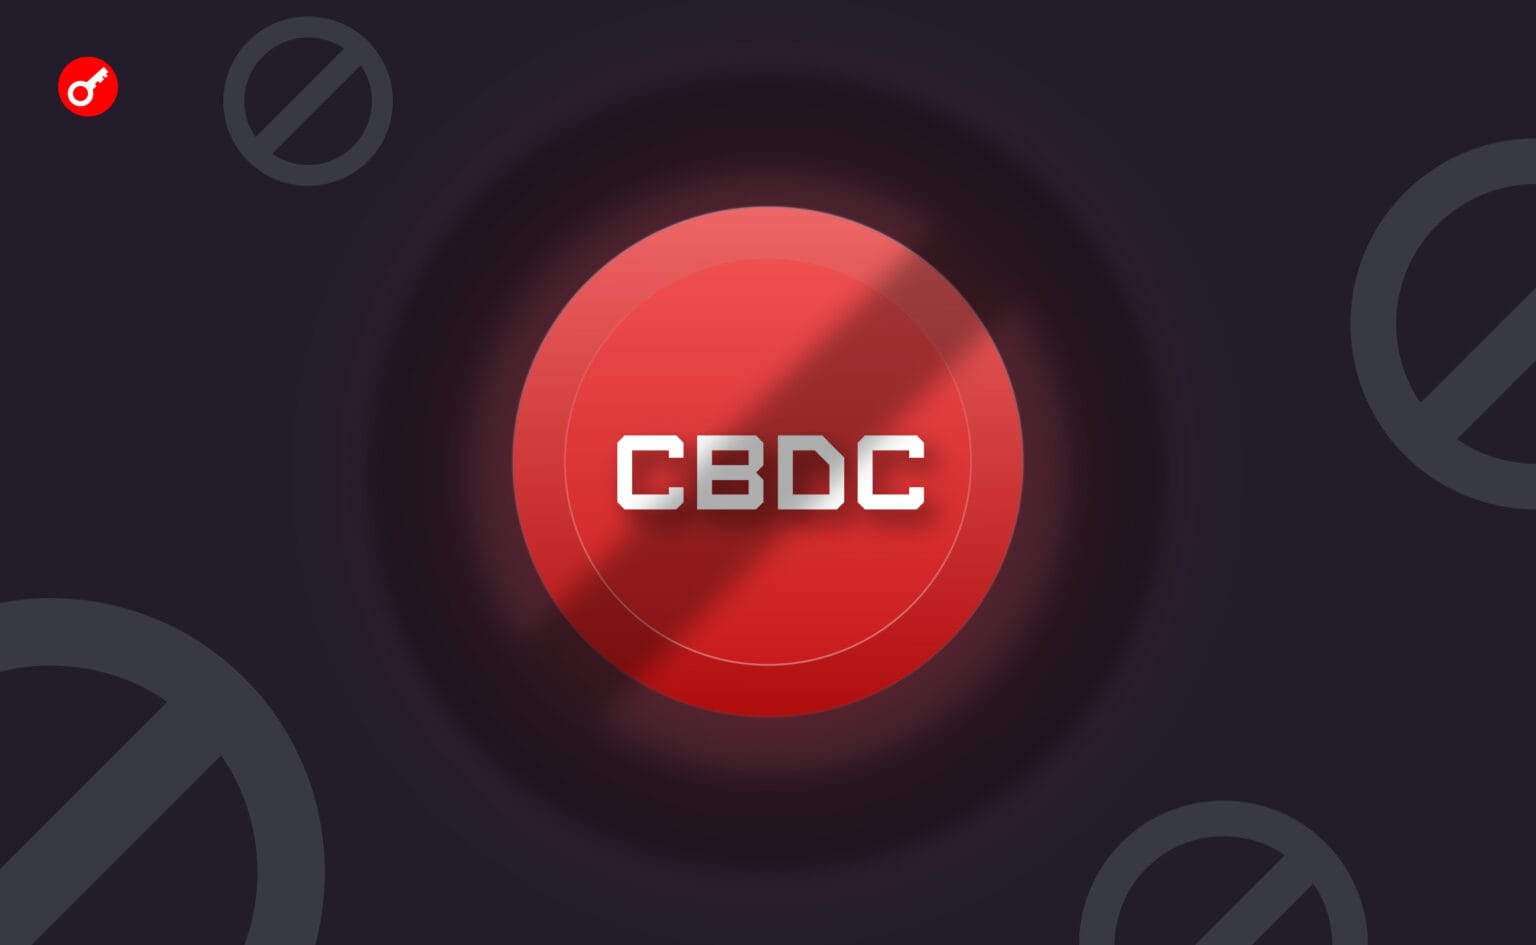 菲律宾中央银行已经排除了基于区块链的CBDC的创建